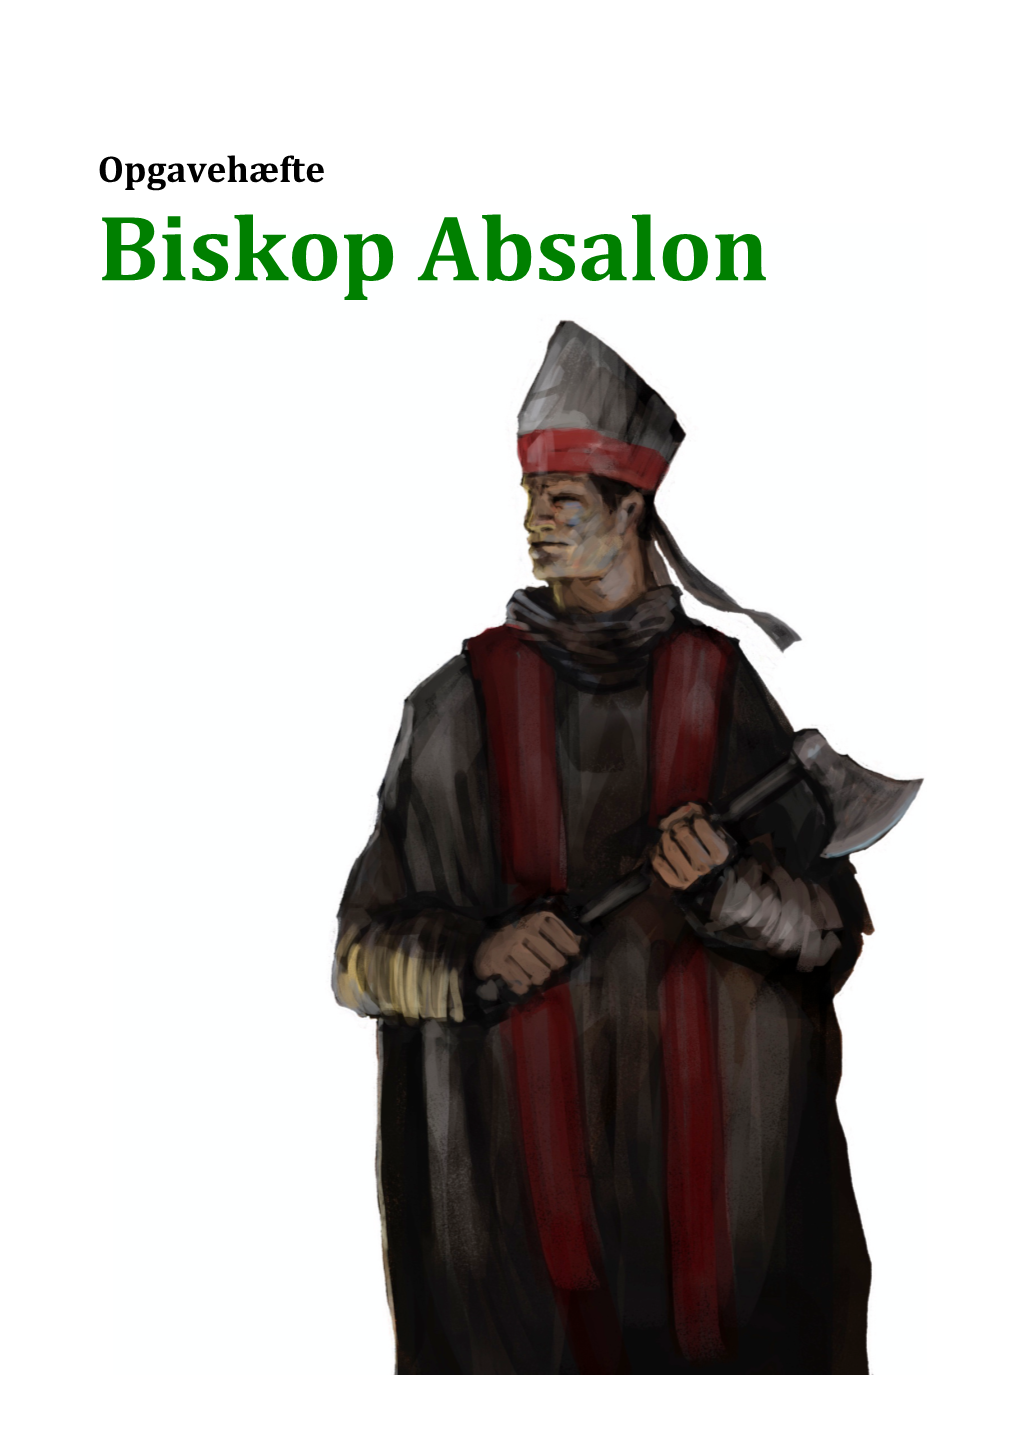 Biskop Absalon